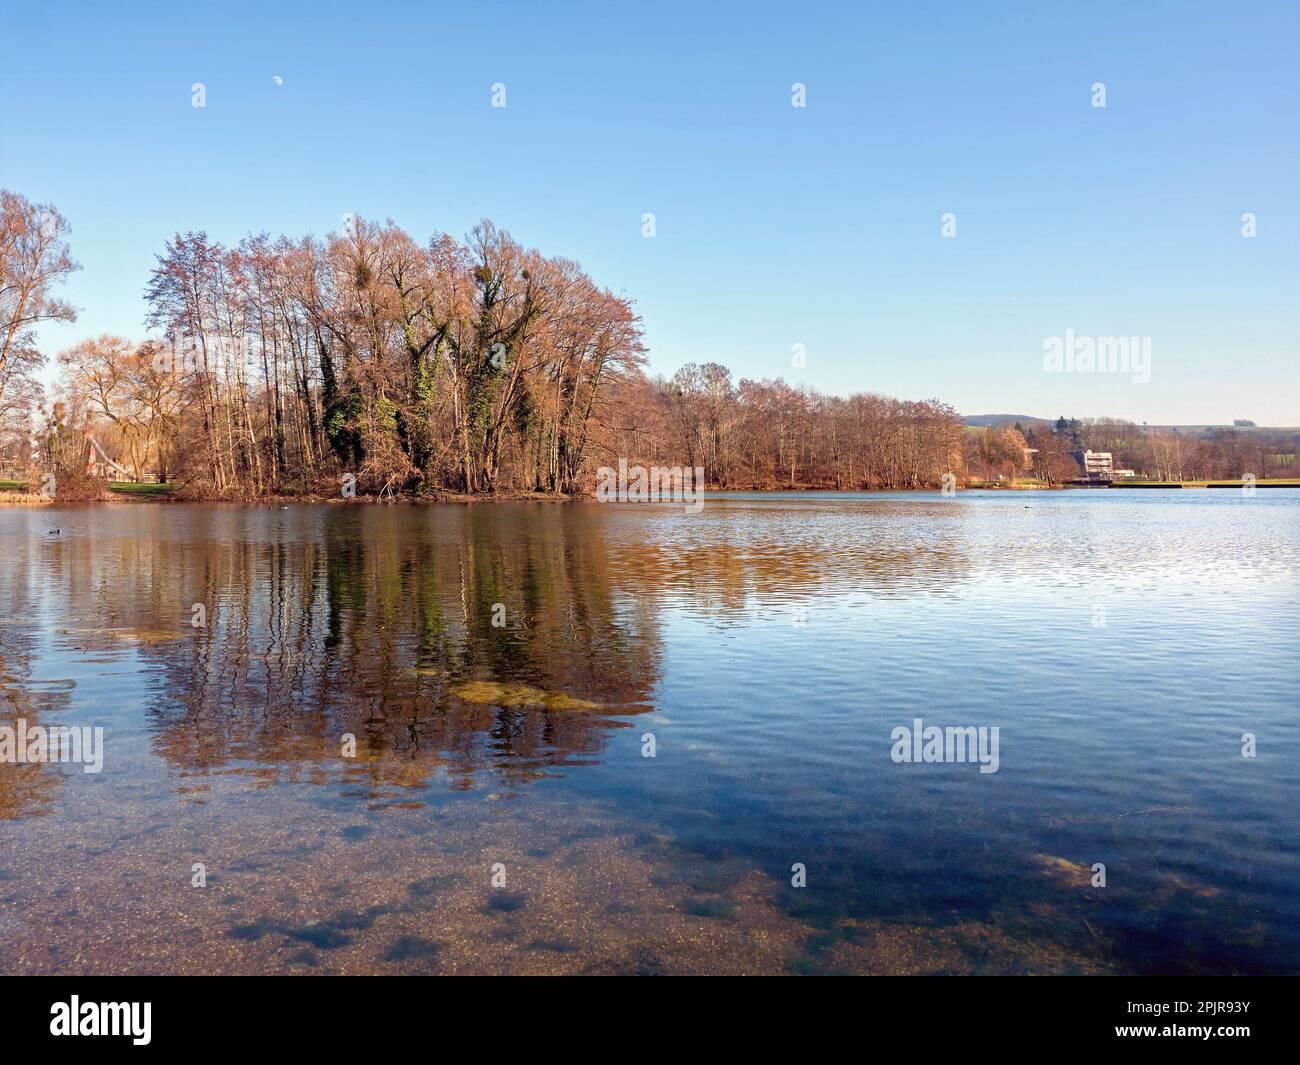 Un grupo de árboles sin hojas en invierno se refleja en la superficie de un lago, con un cielo de invierno azul claro por encima Foto de stock